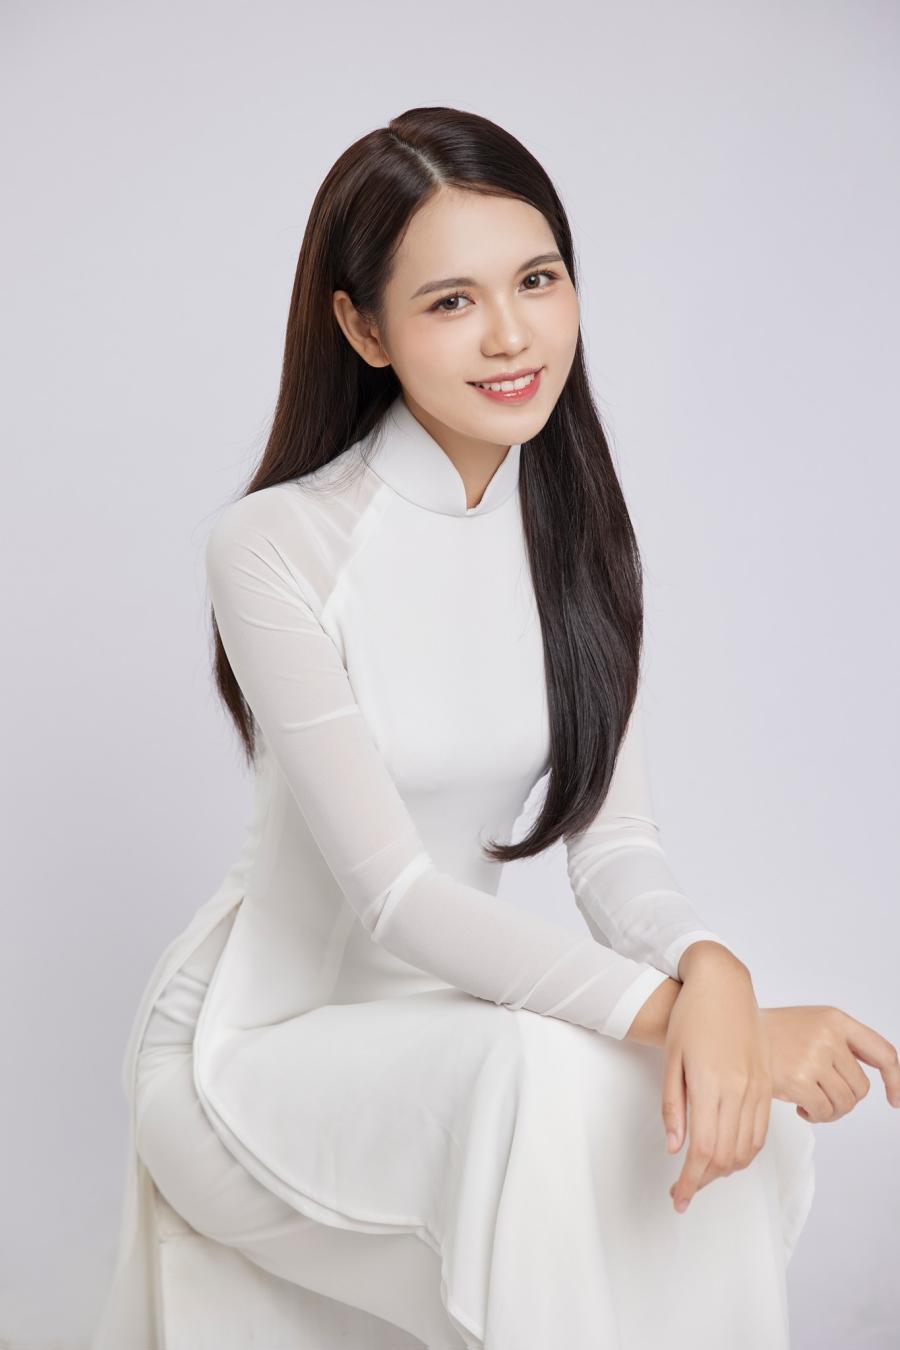 Nữ MC quê Thái Bình làm đài VTVcab vừa trở thành hoa hậu: Đẹp trong trẻo, dáng nuột nà - 2